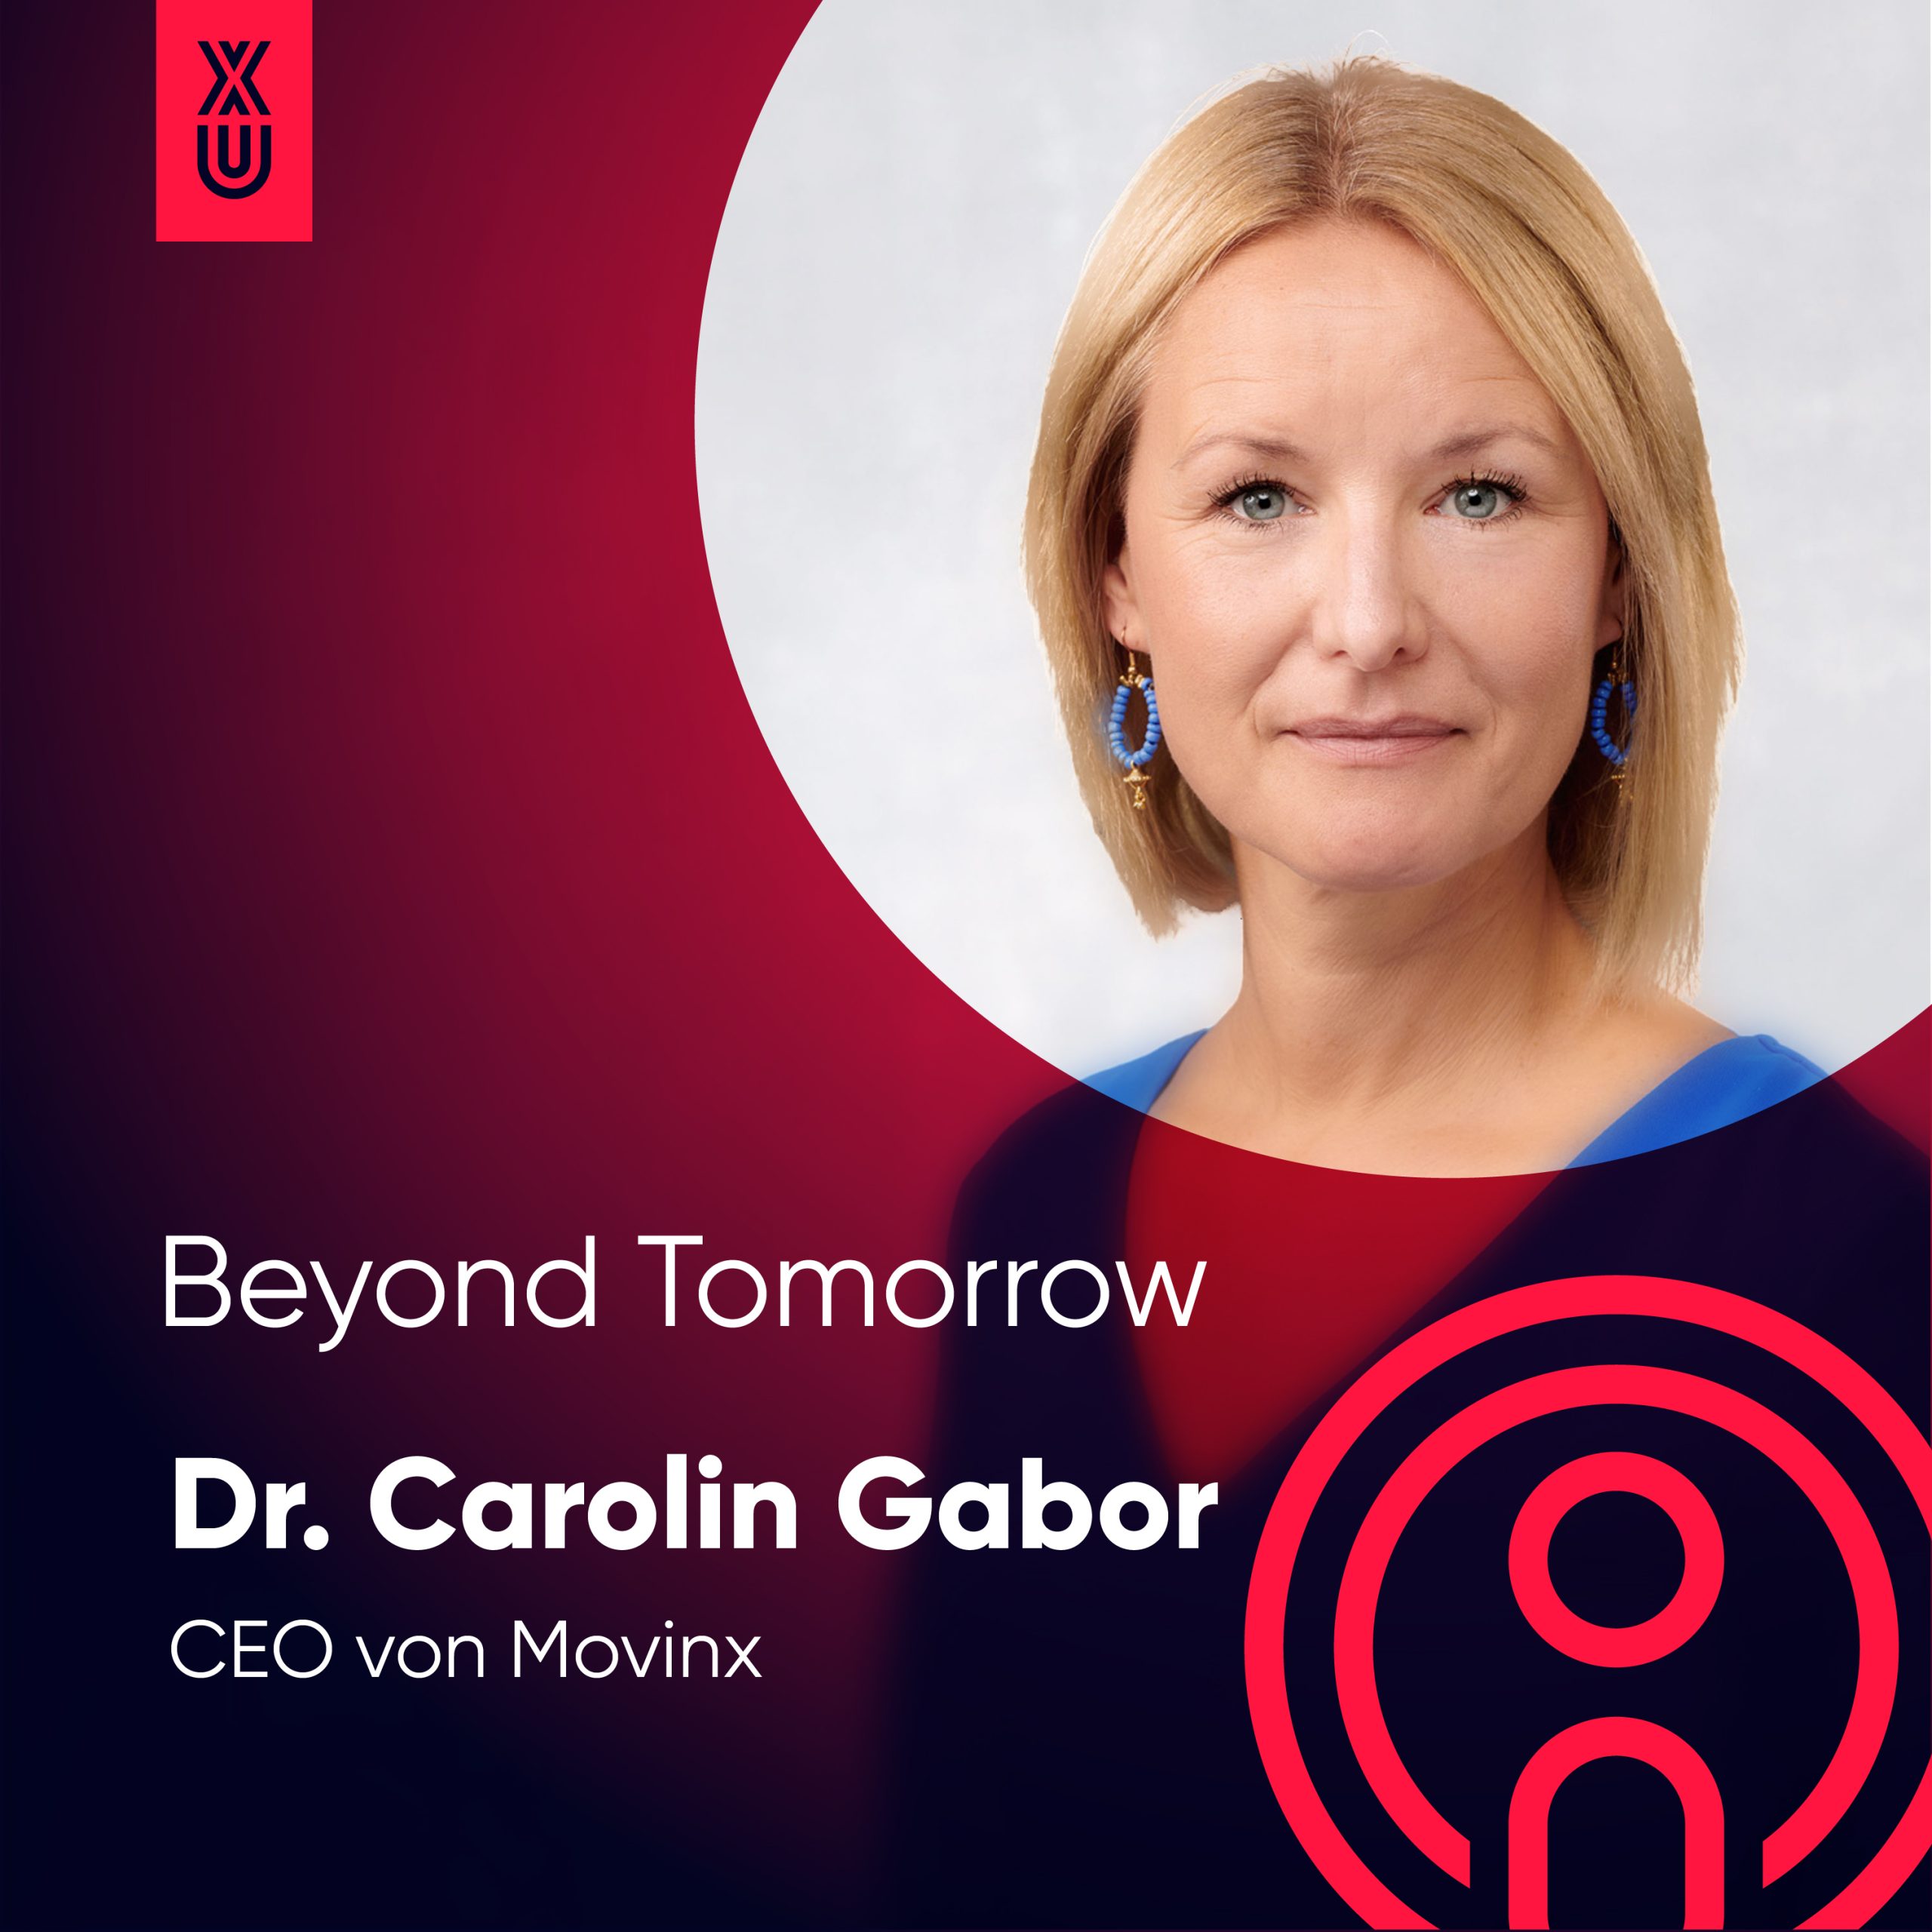 “Produktmanager sollten Mini- Geschäftsführer sein” mit Carolin Gabor